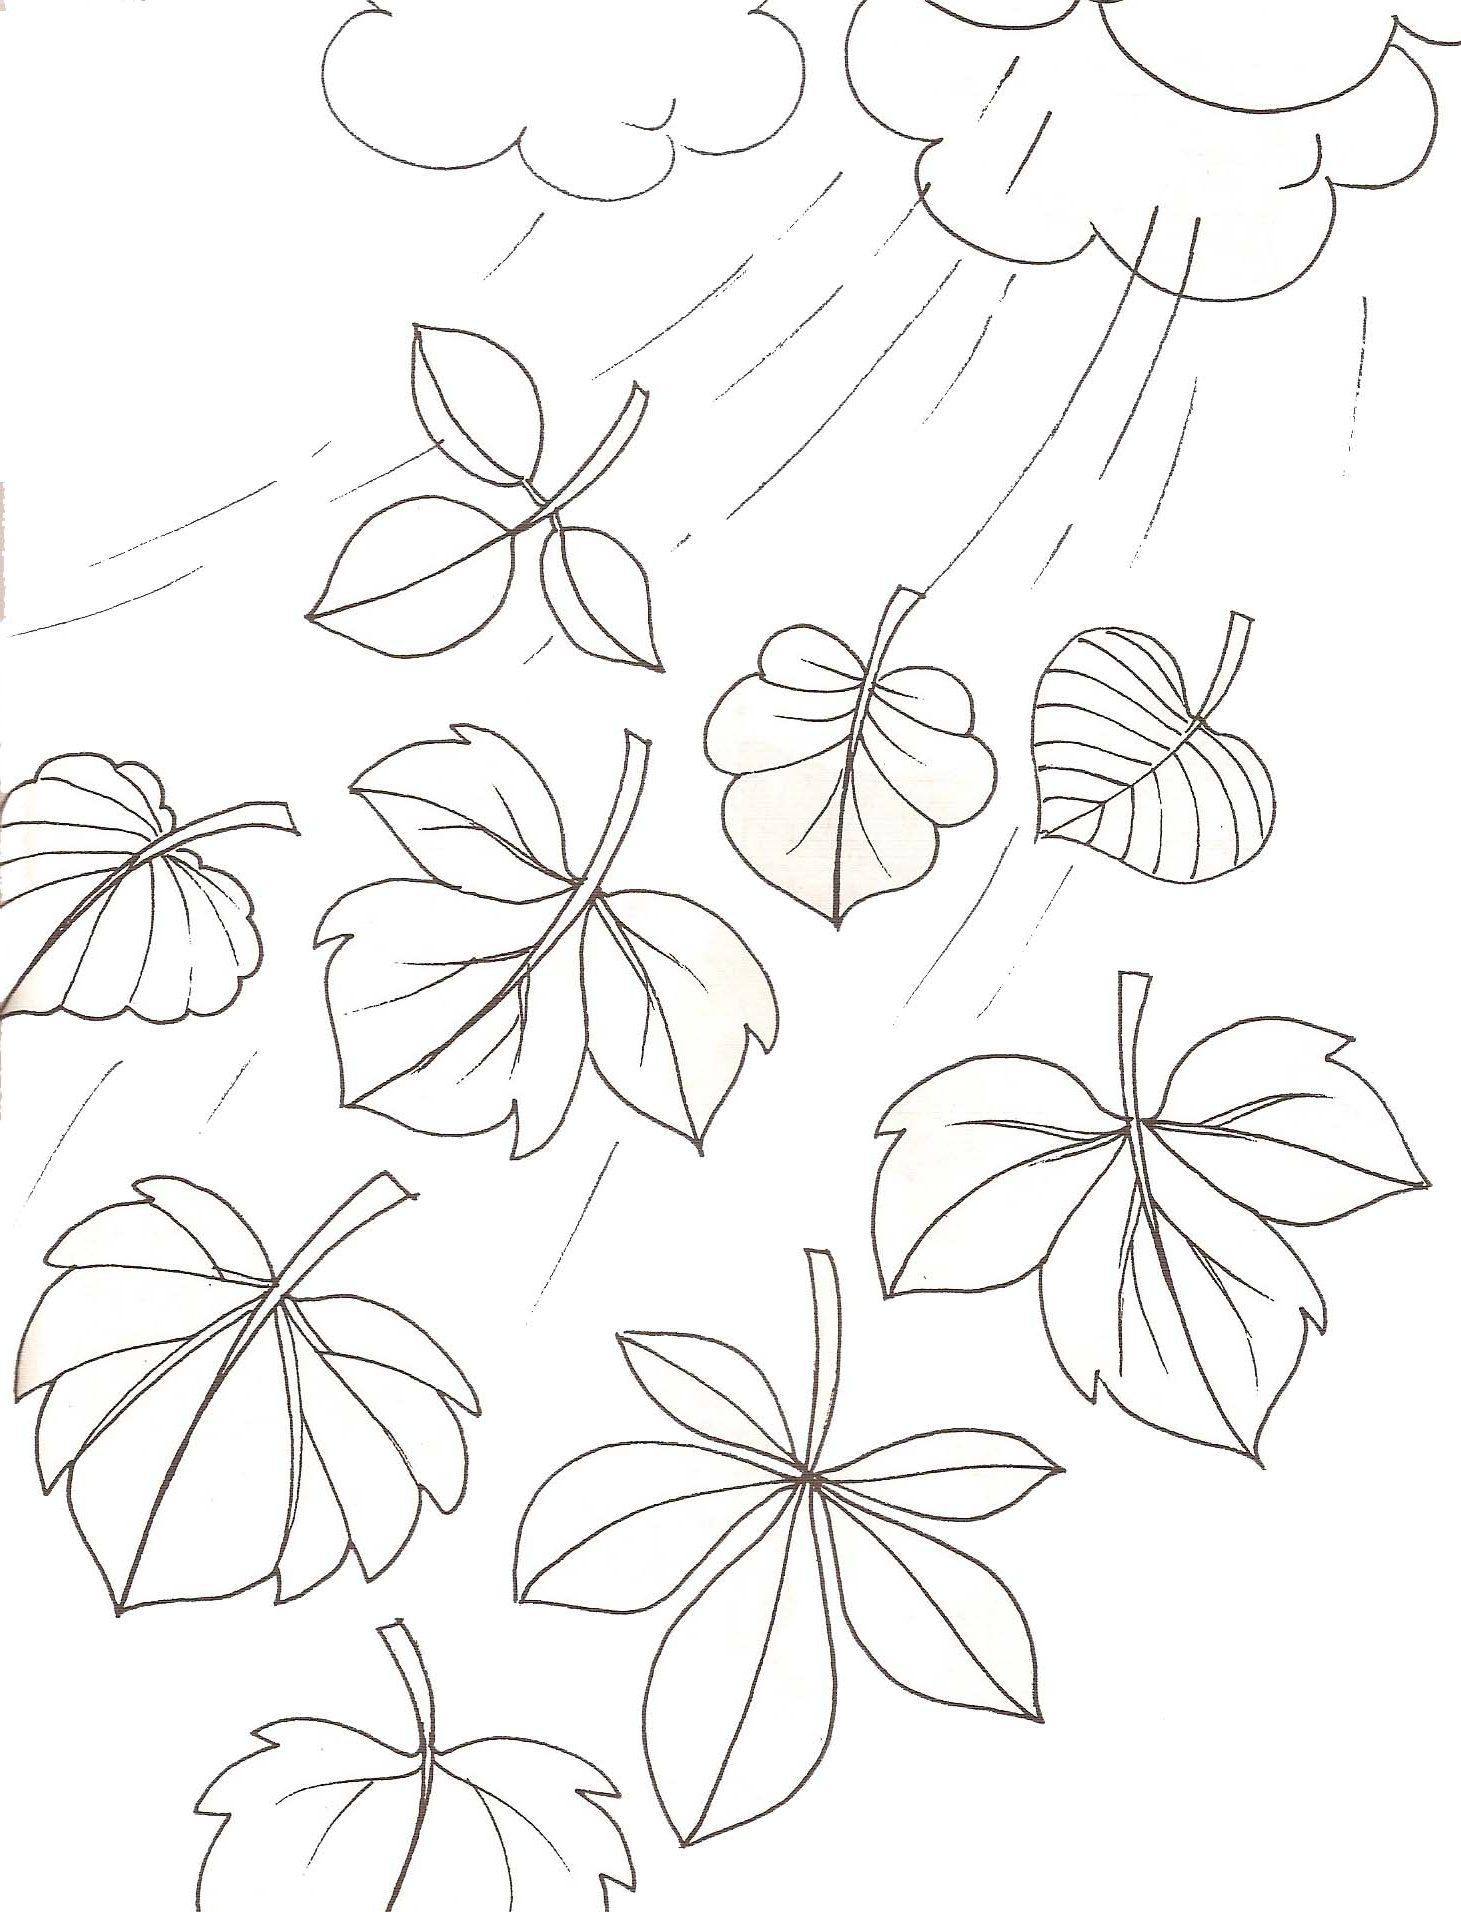 coloriage feuilles dautomne interieur dessin de feuille d automne